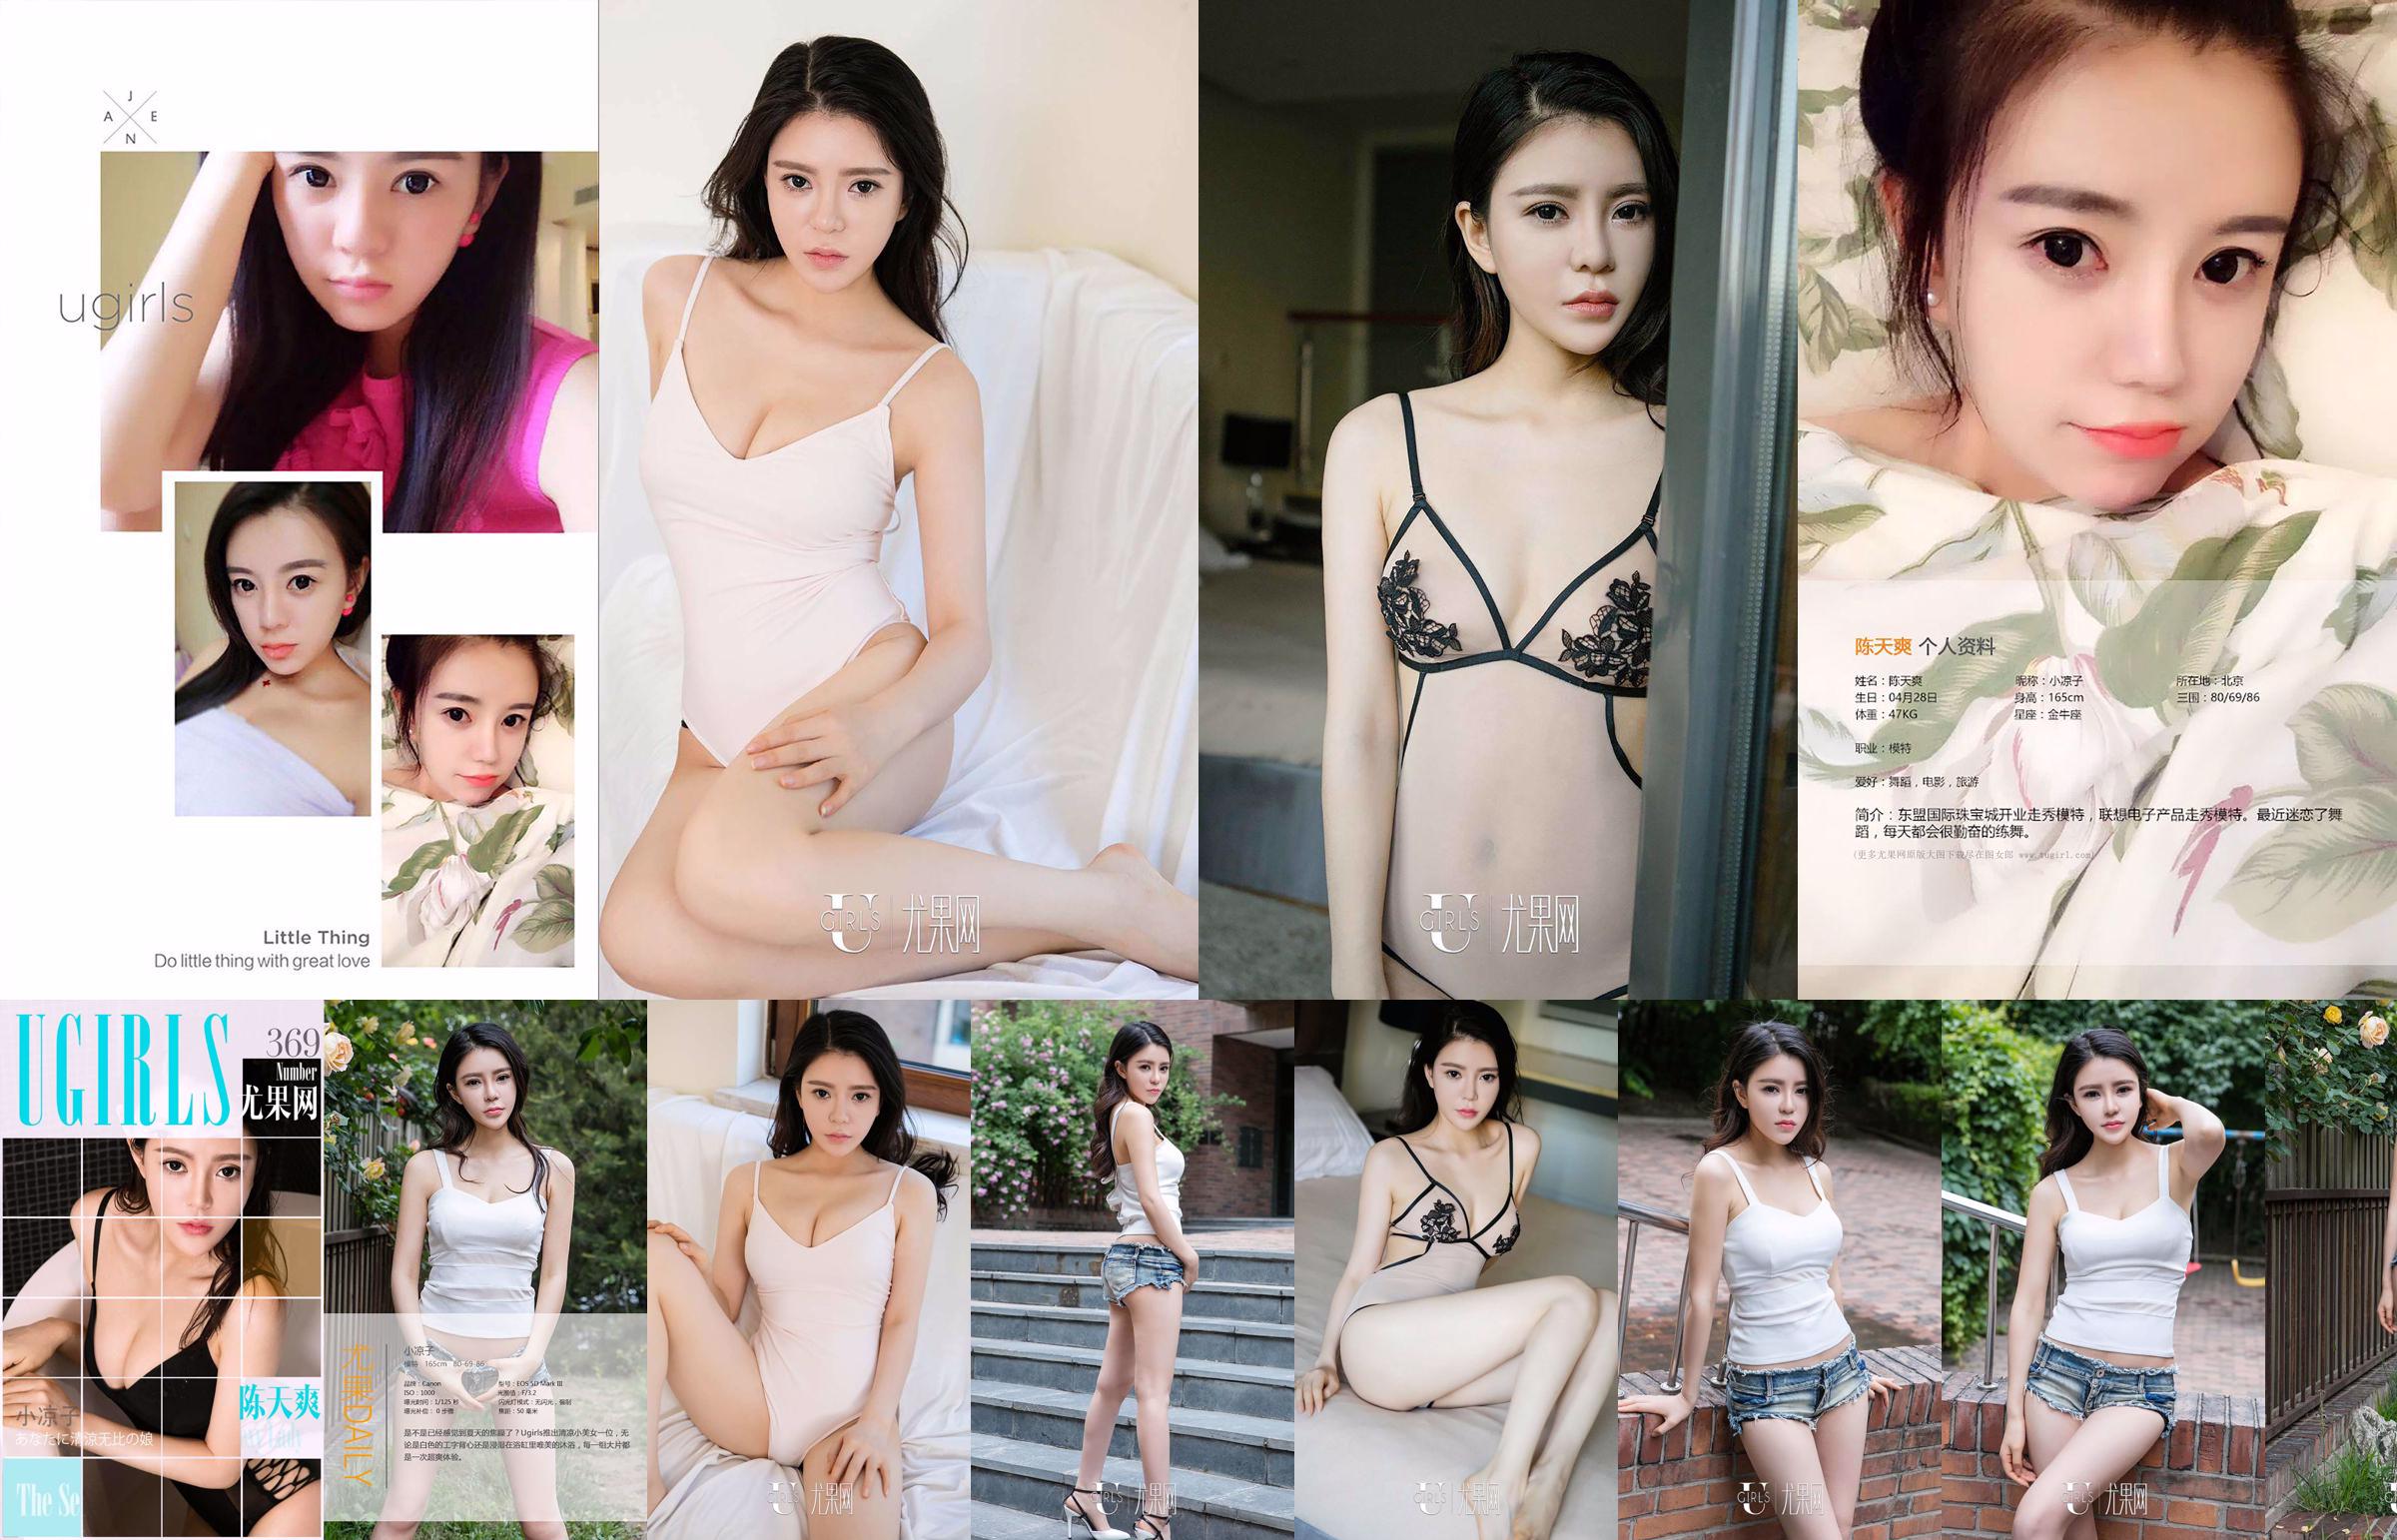 Chen Tianshuang "Looks Beautiful" [爱 优 物 Ugirls] No.395 No.511992 Página 2